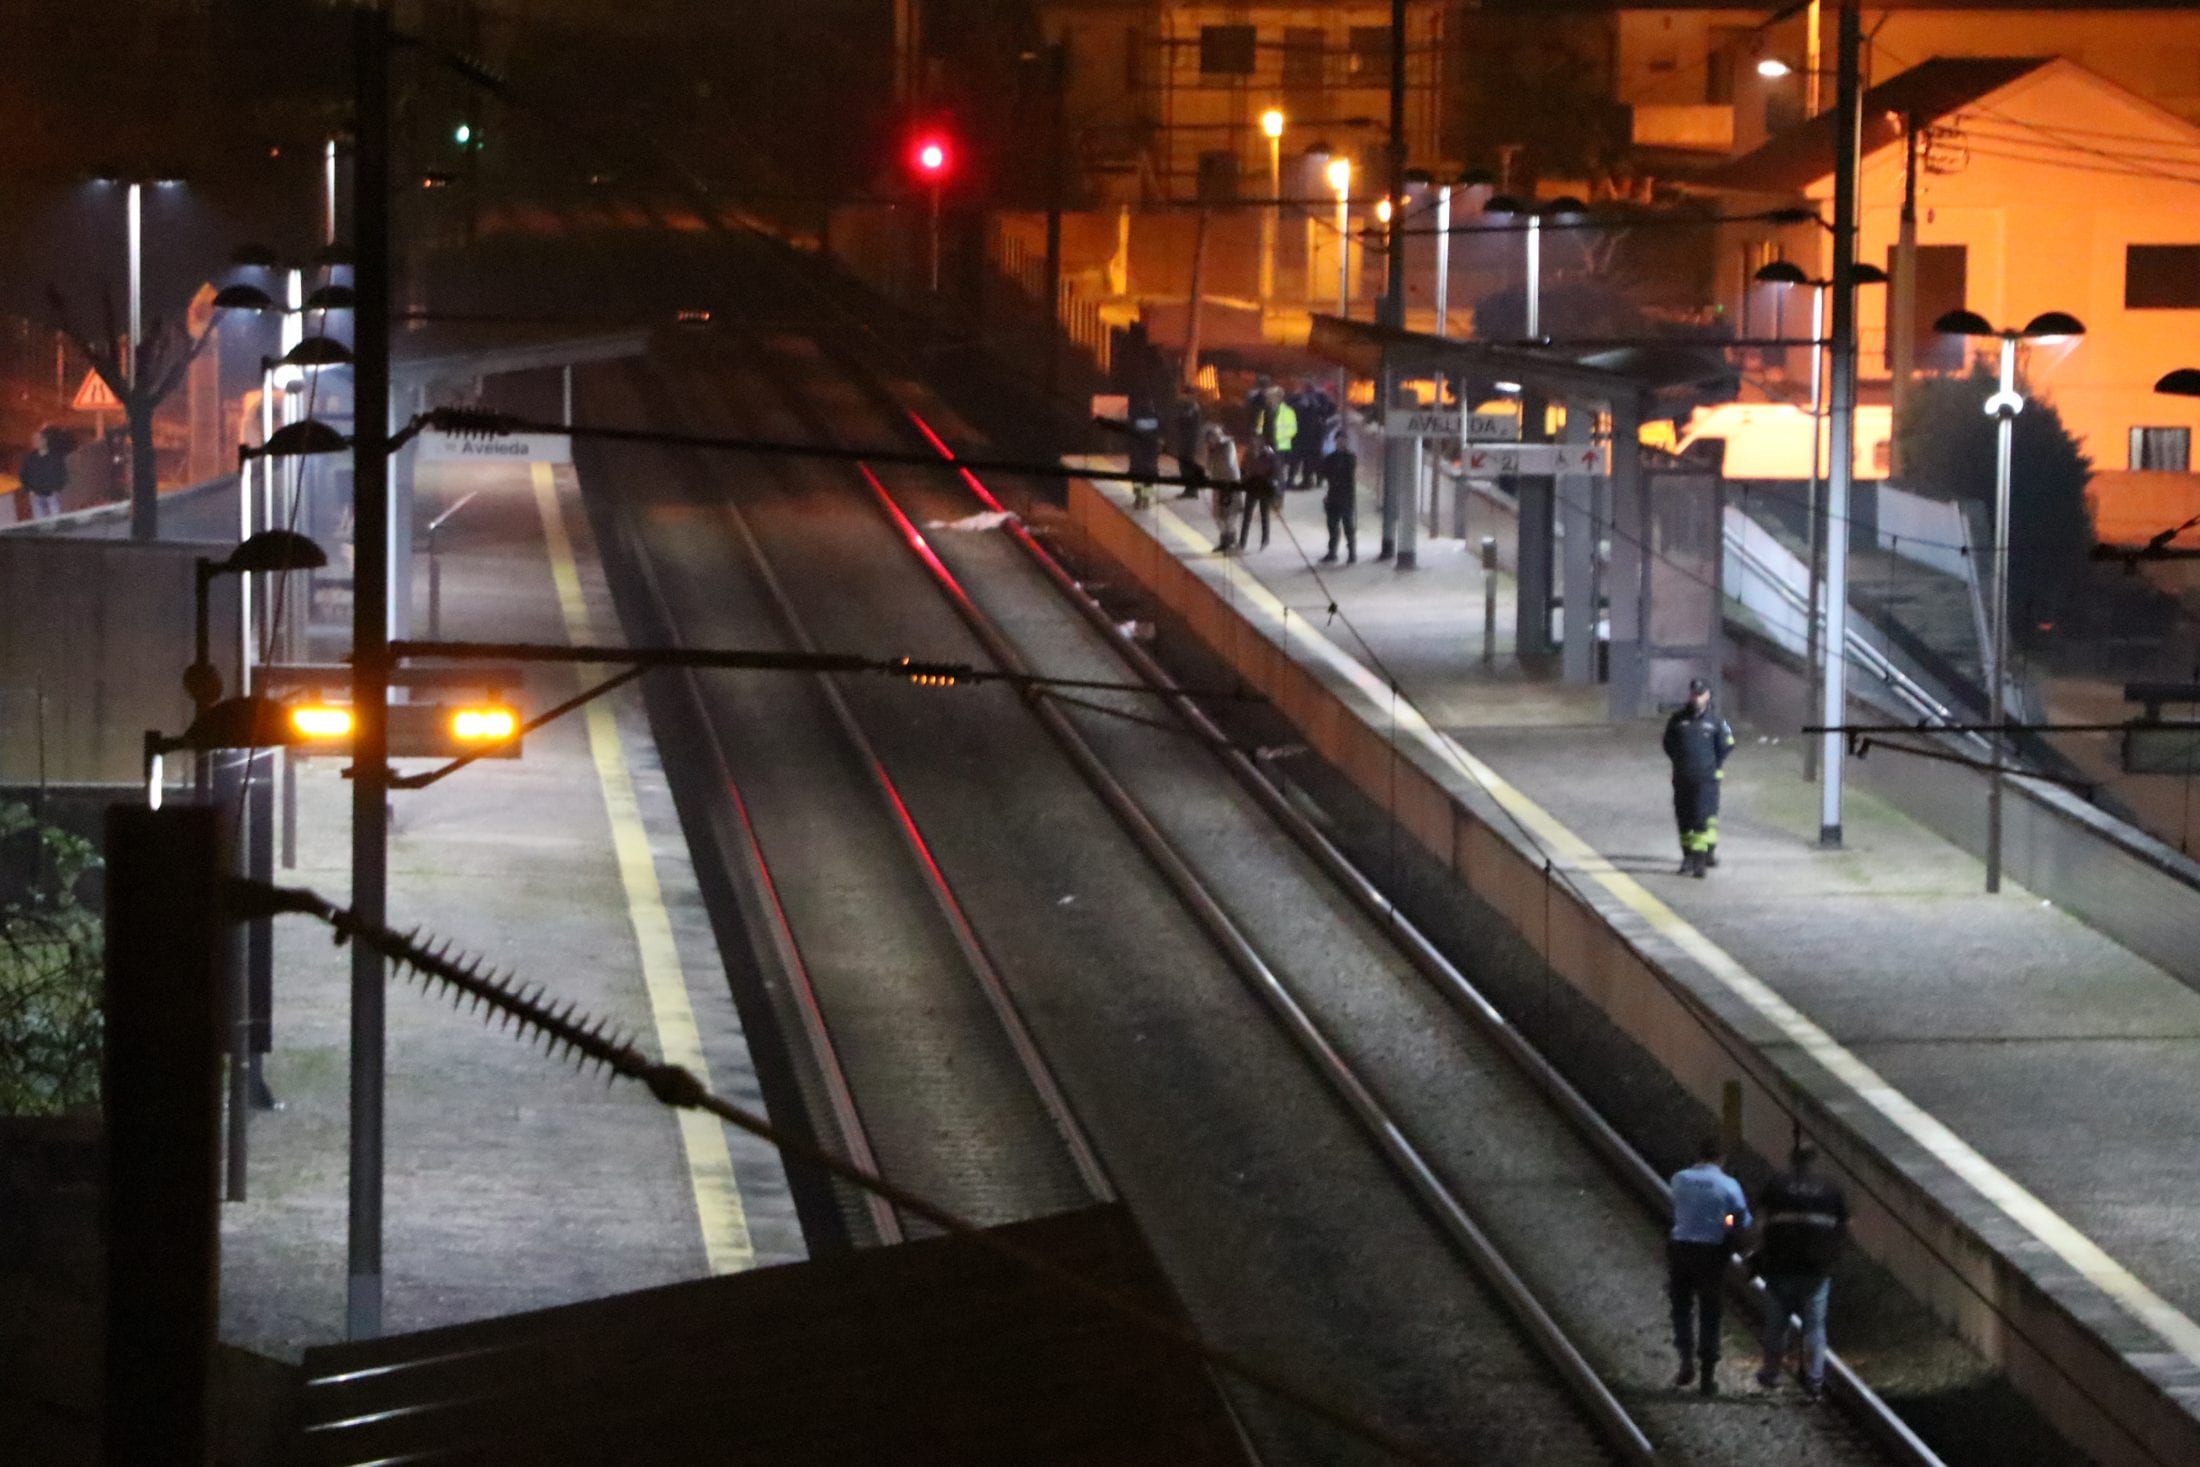 Ramal de Braga condicionado em Aveleda após comboio colher indivíduo mortalmente